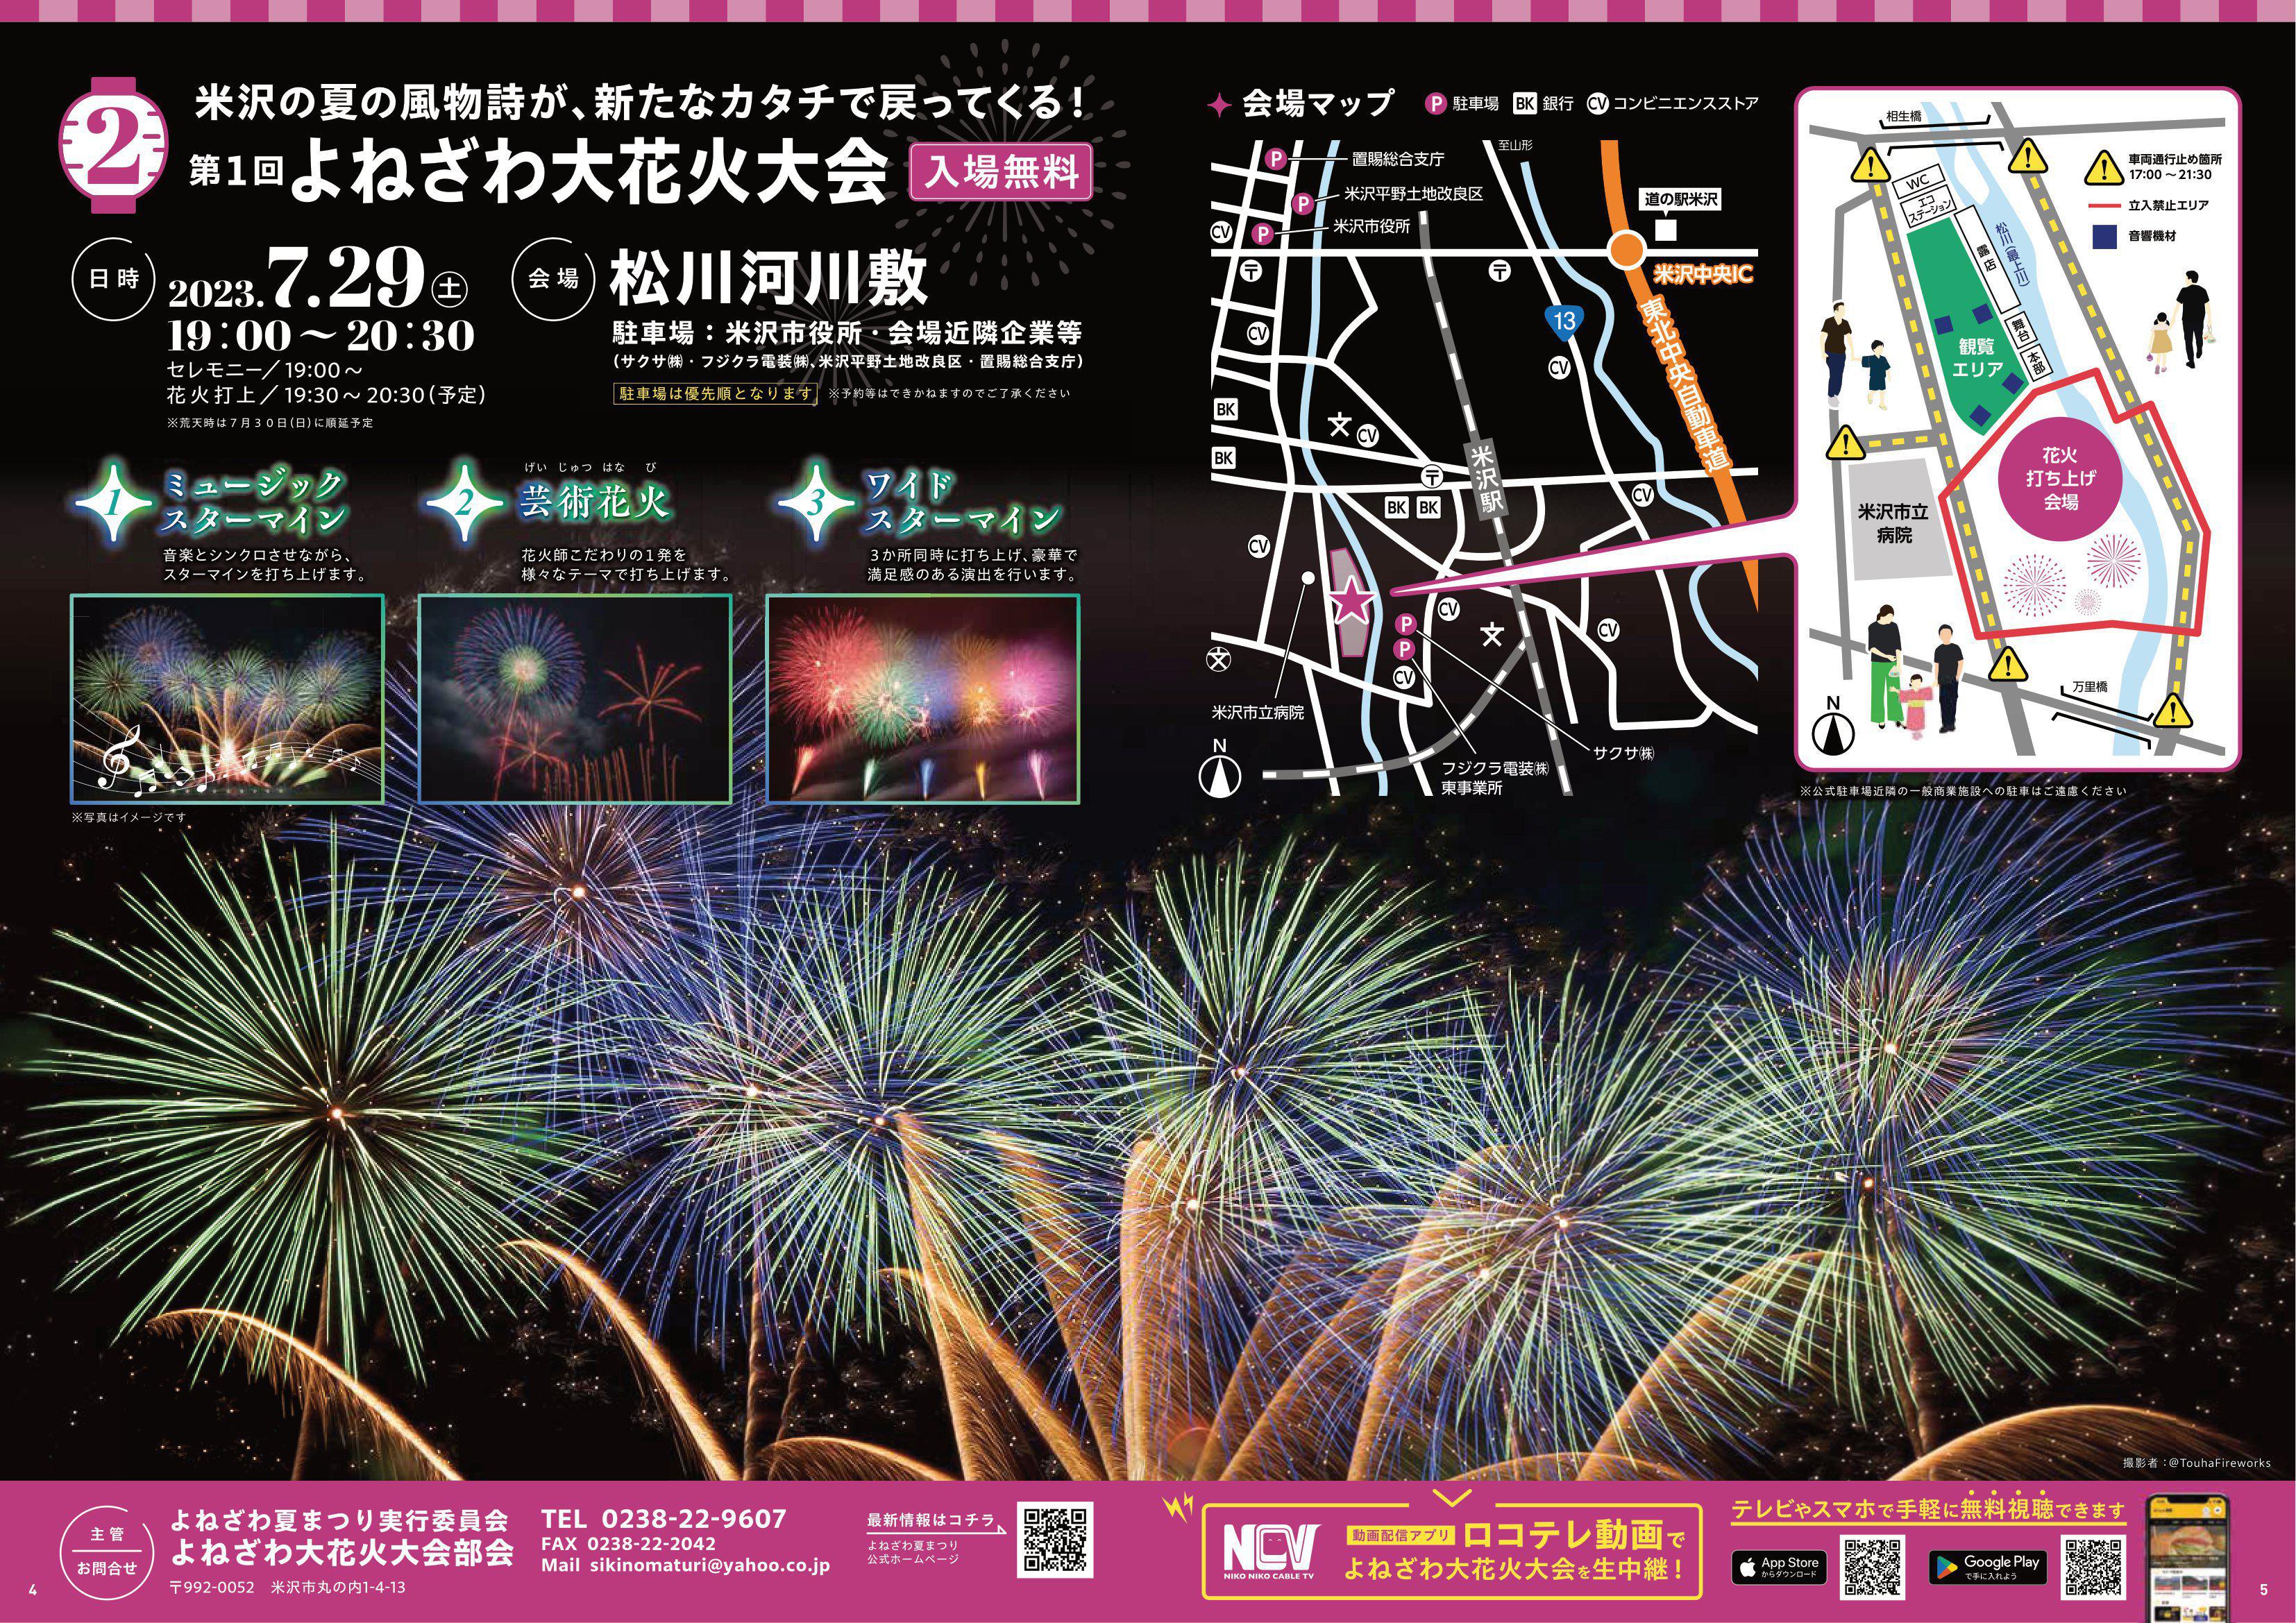 Yonezawa Grand Fireworks Festival!